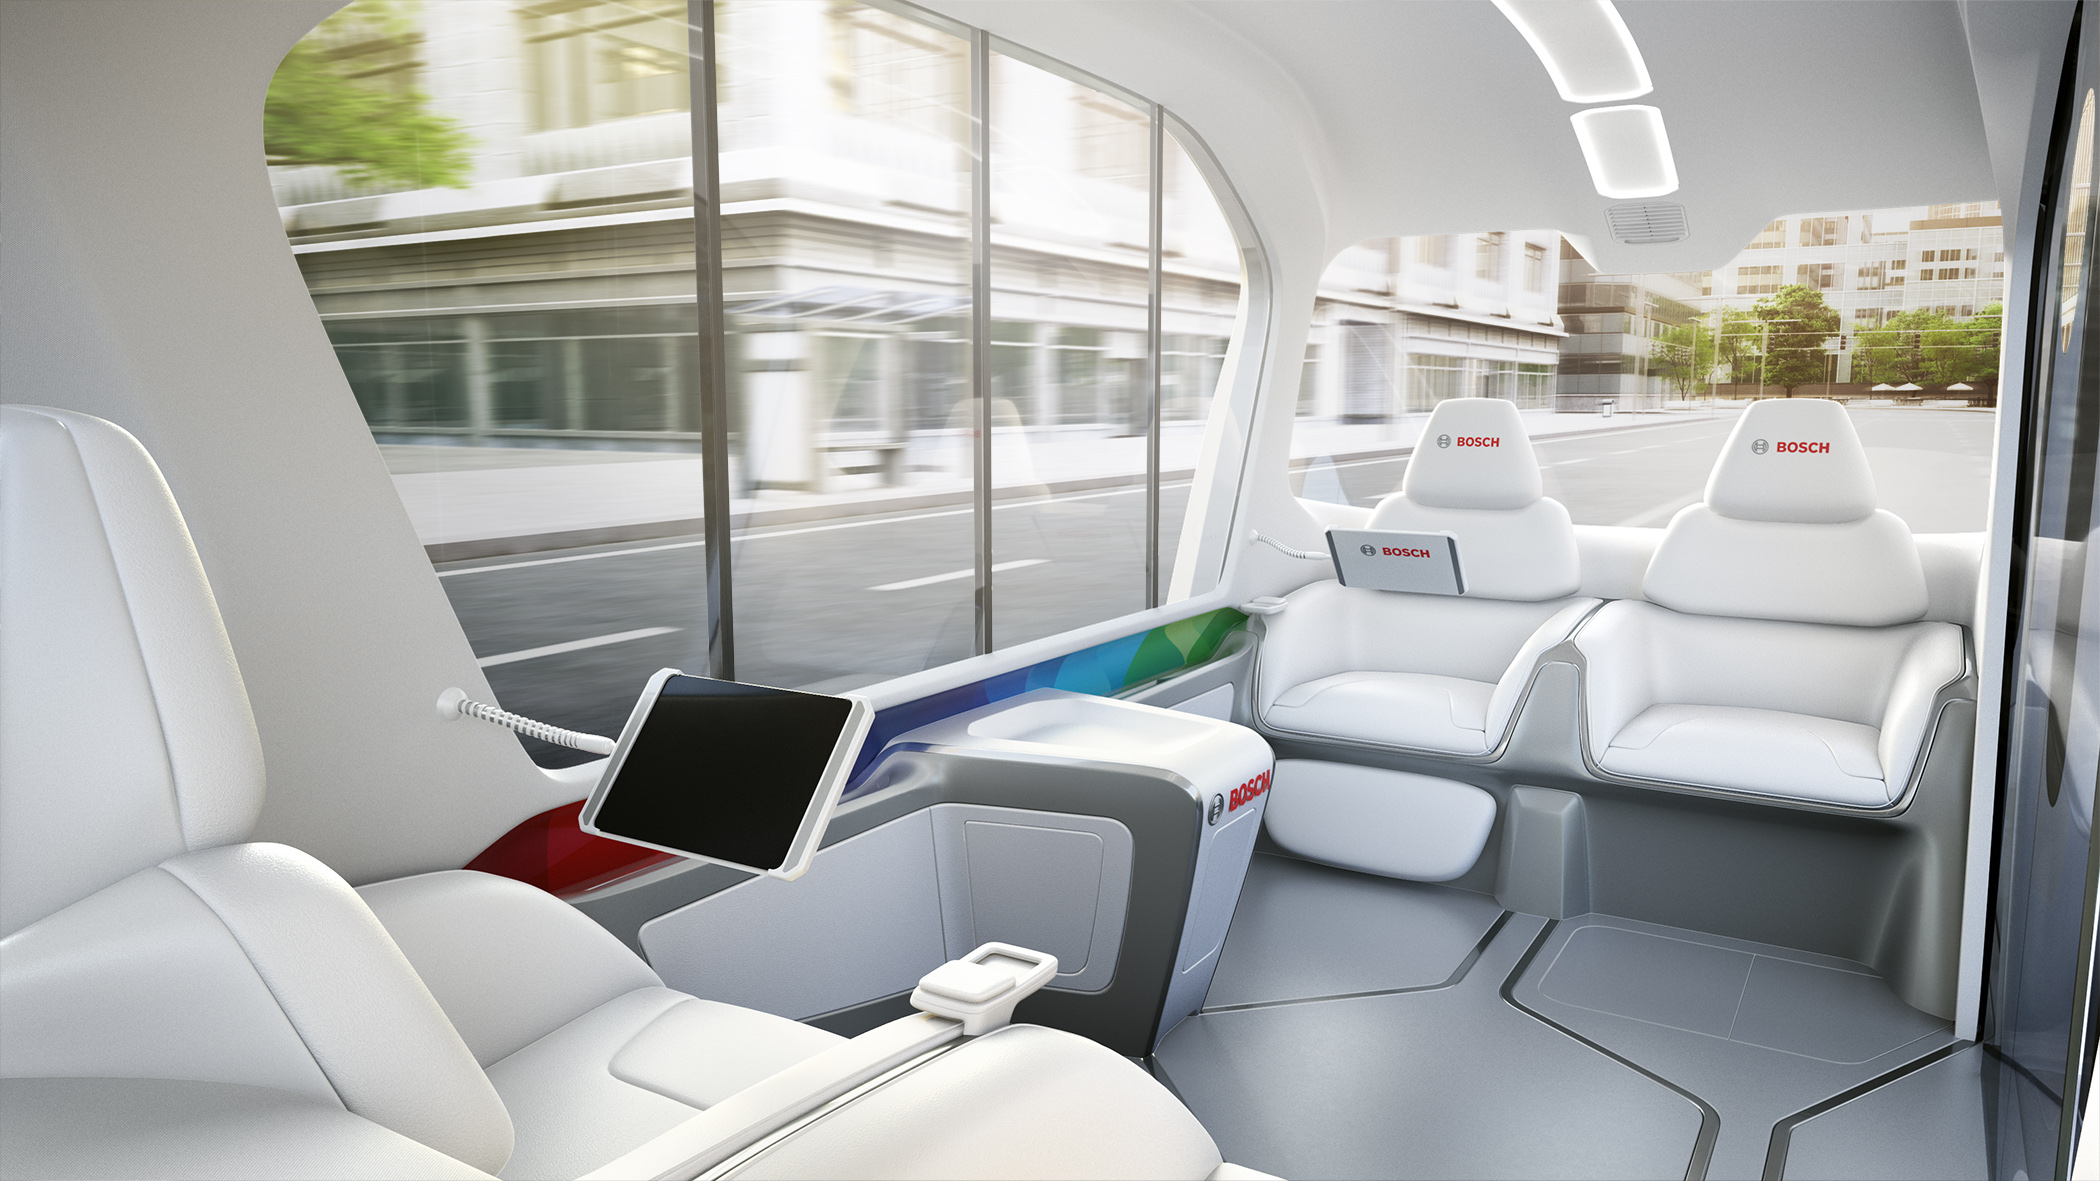 Weltpremiere des neuen Shuttle-Konzeptfahrzeugs von Bosch auf der CES 2019 in Las Vegas